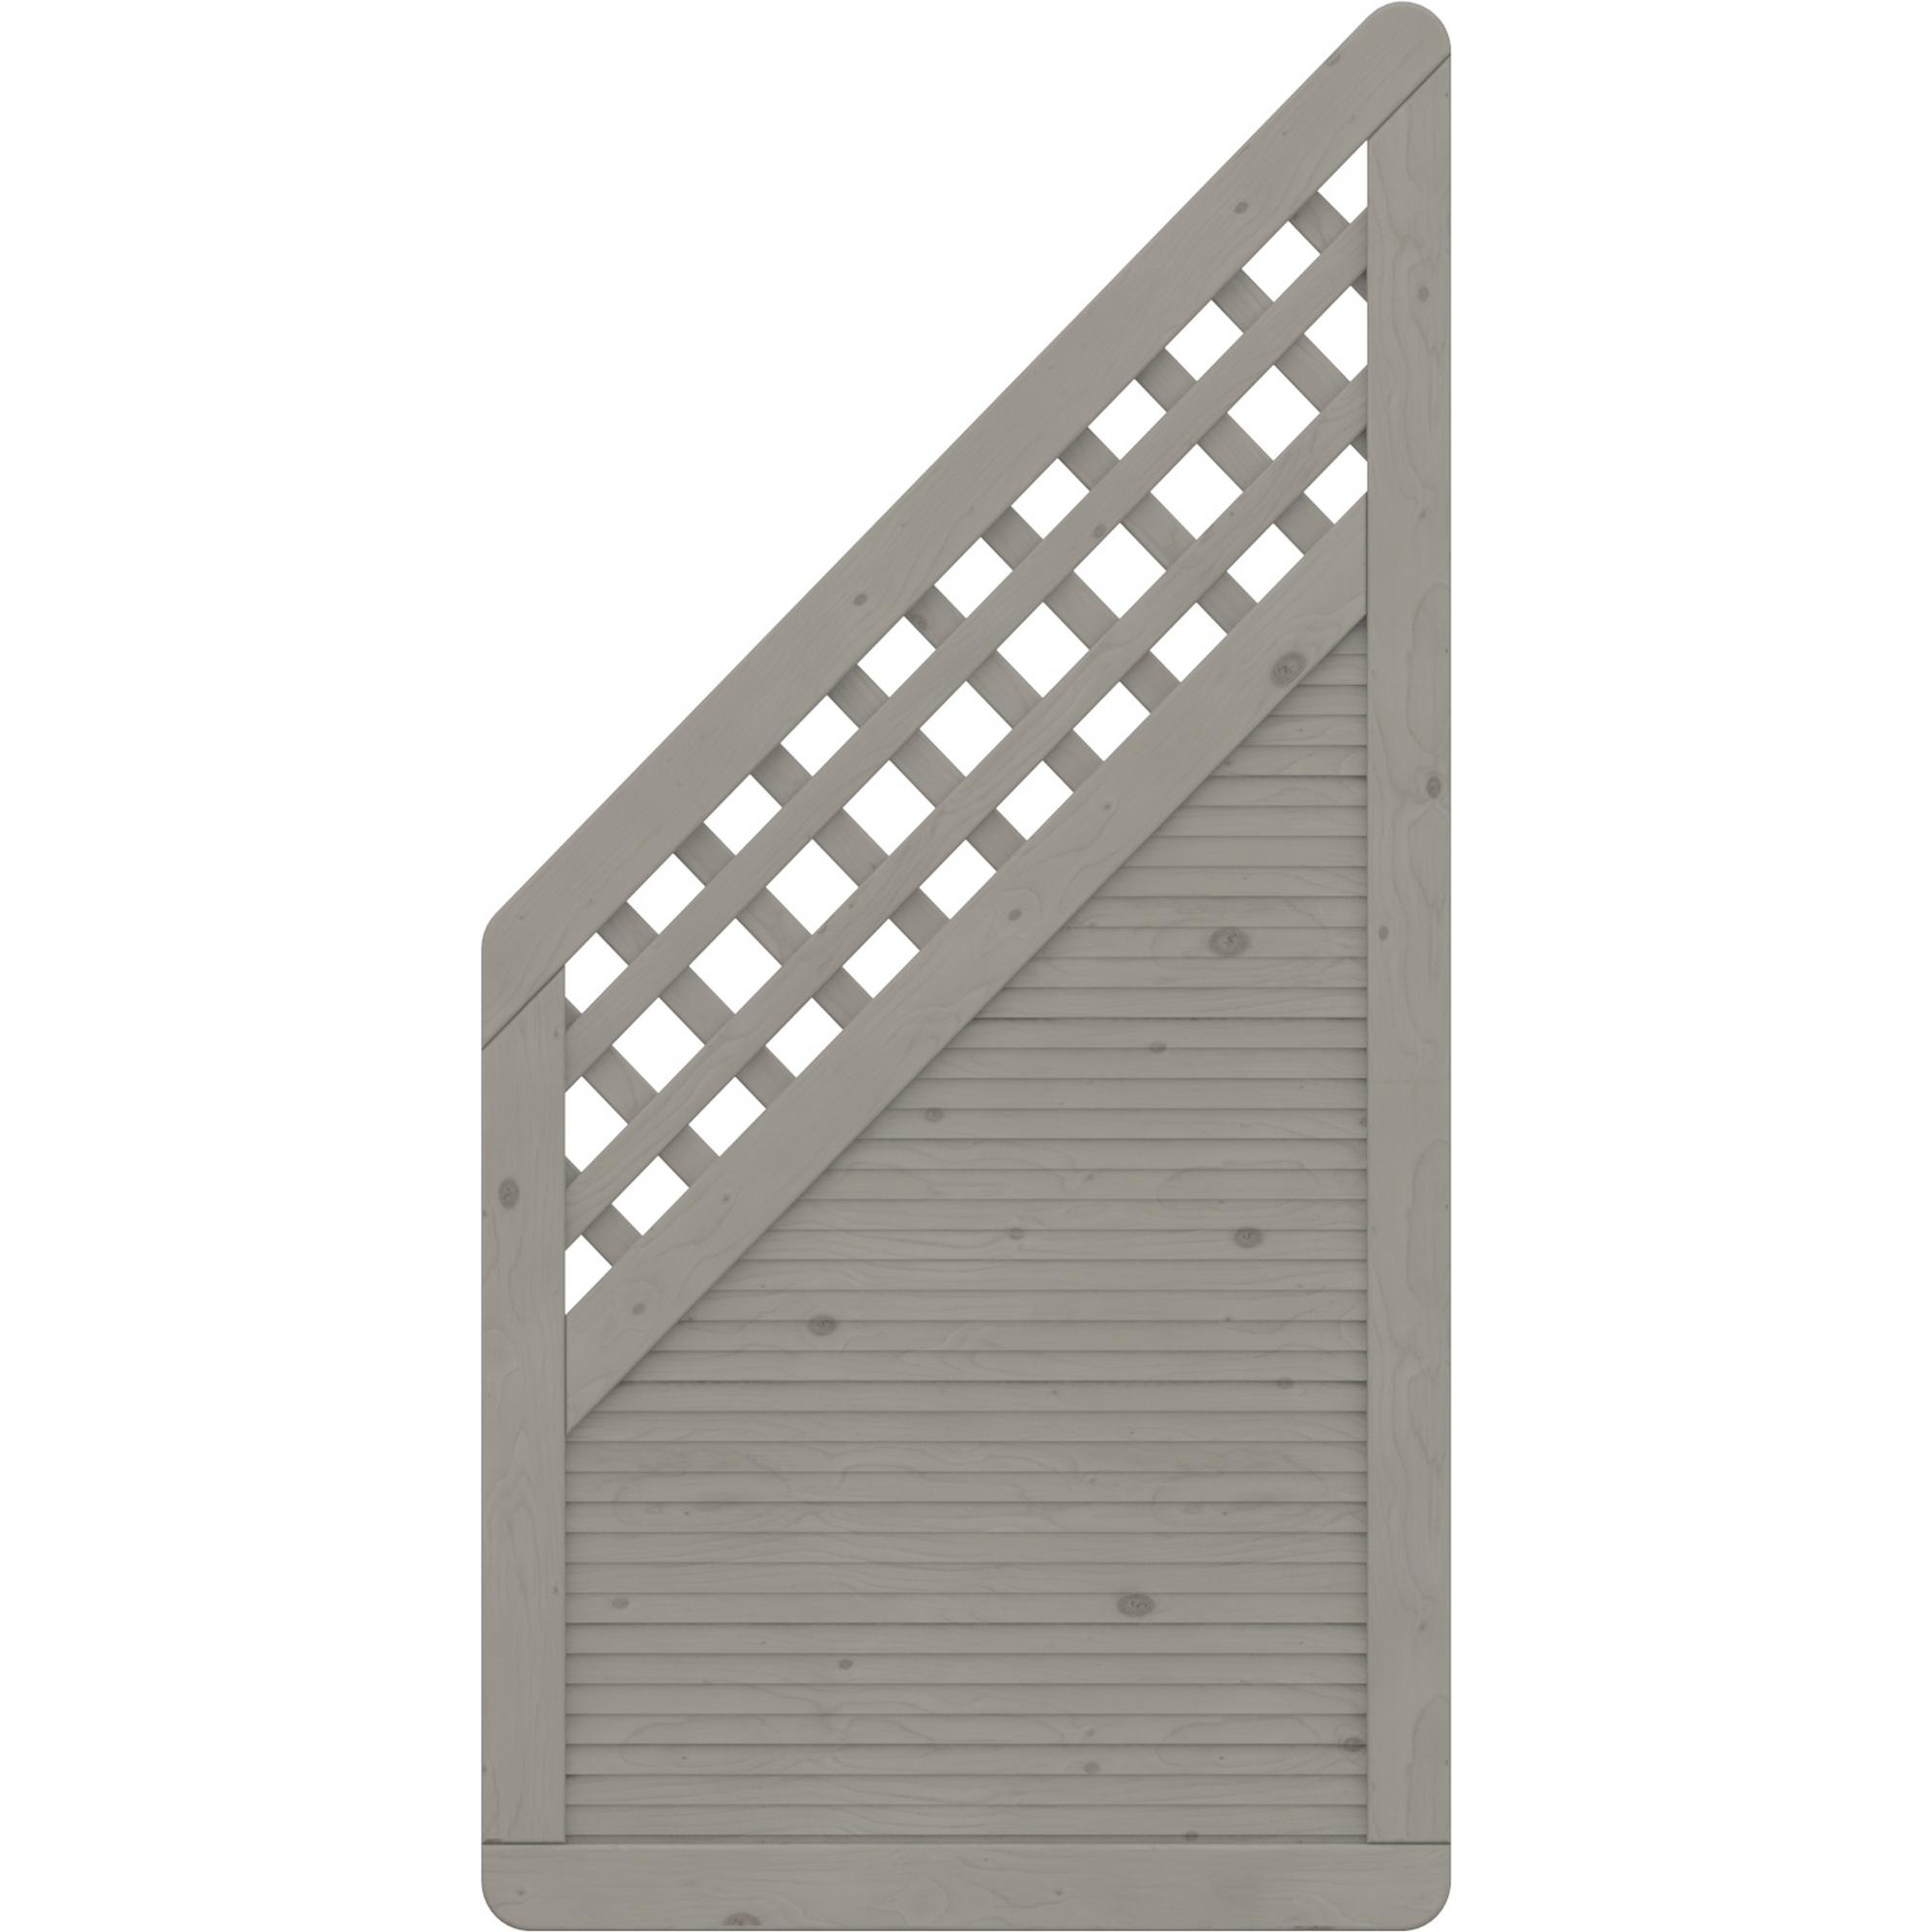 Zaunelement 'Arzago' mit Gitter grau 90 x 179 auf 90 cm + product picture